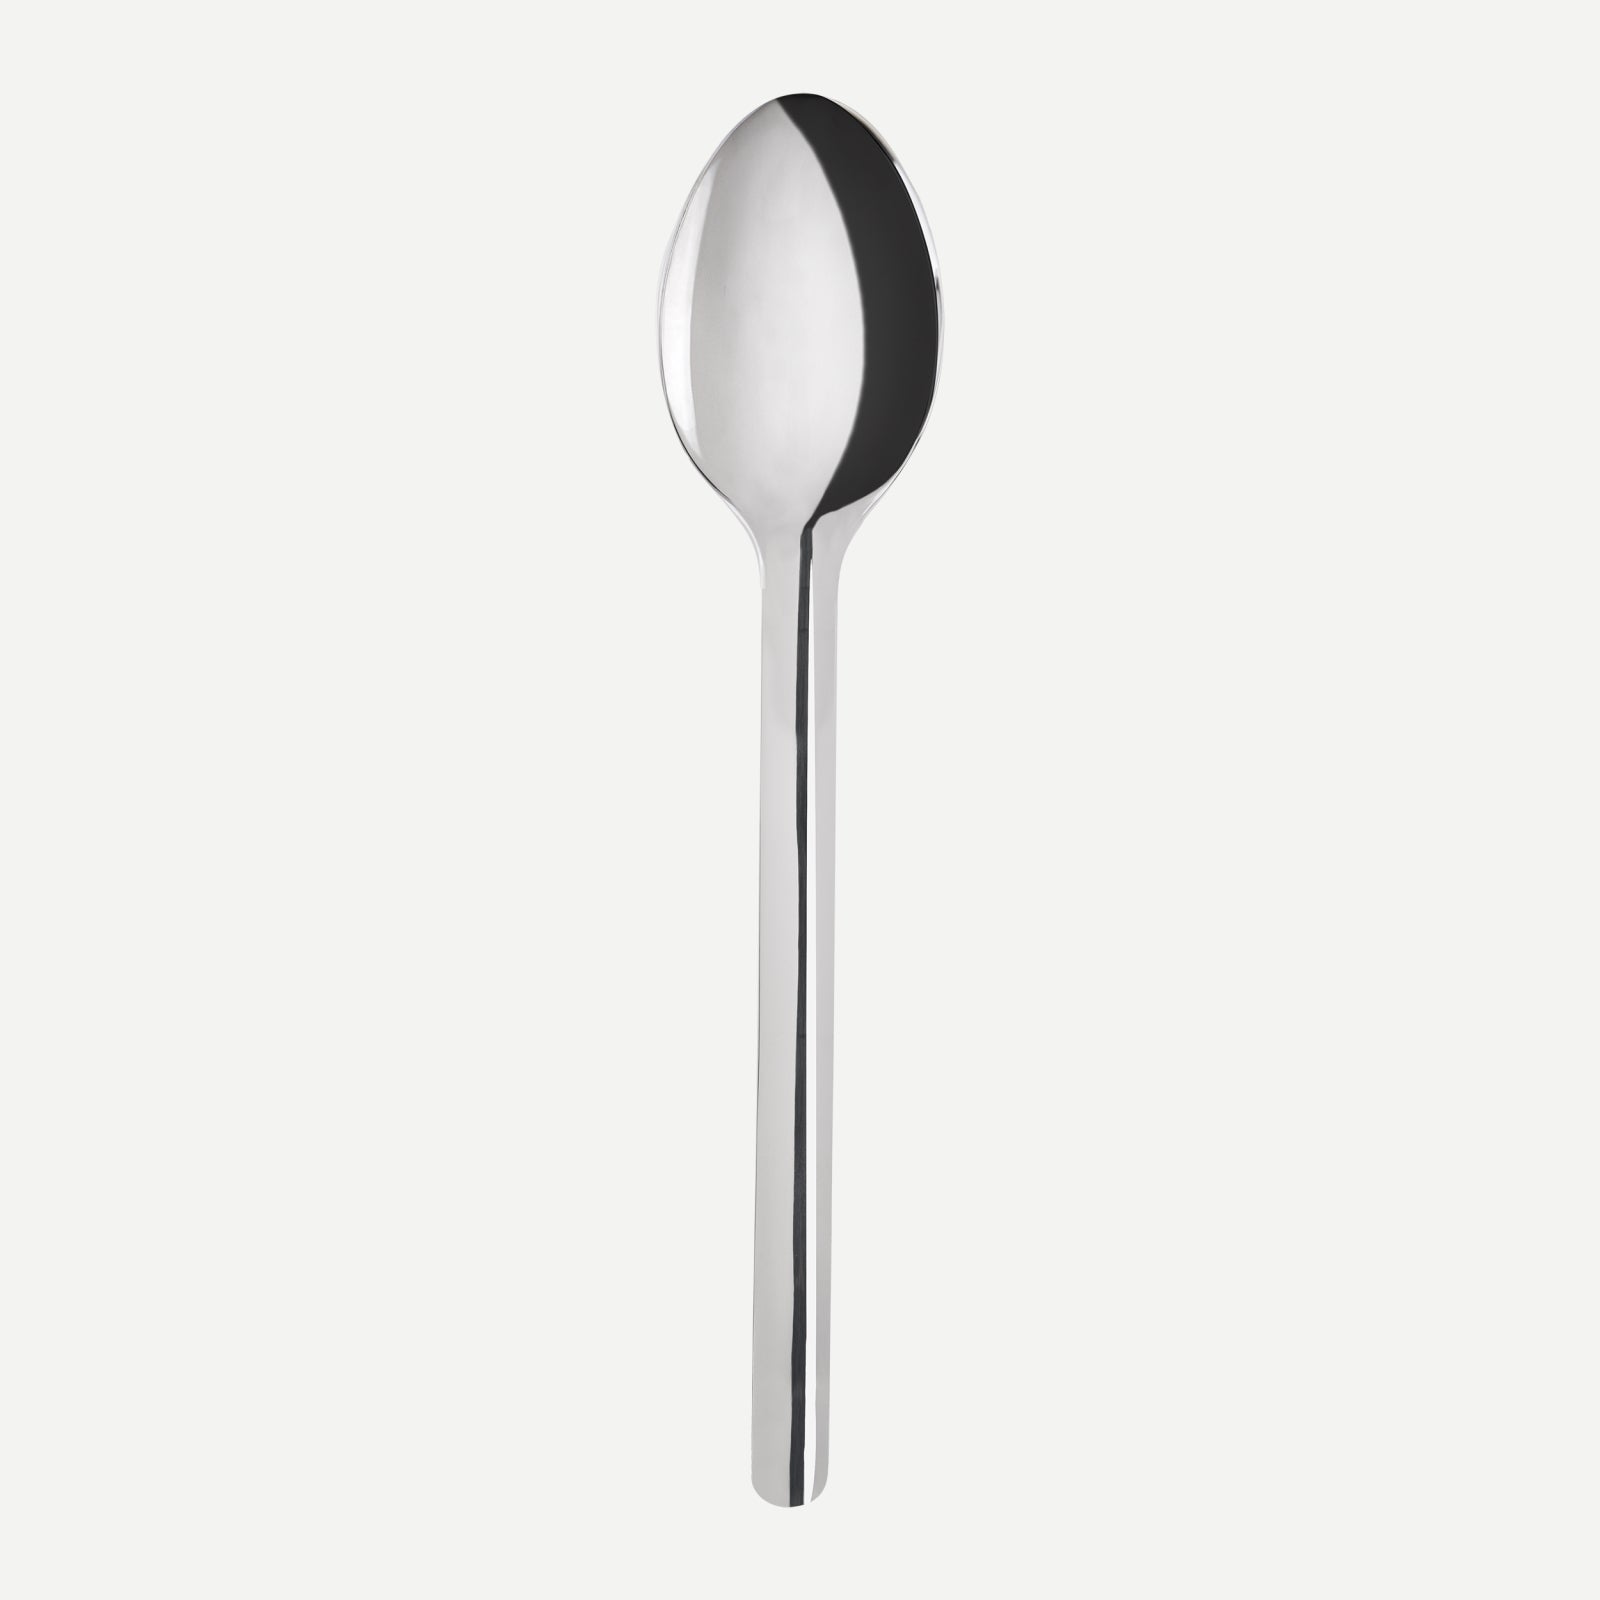 Soup spoon - Loft - Stainless steel